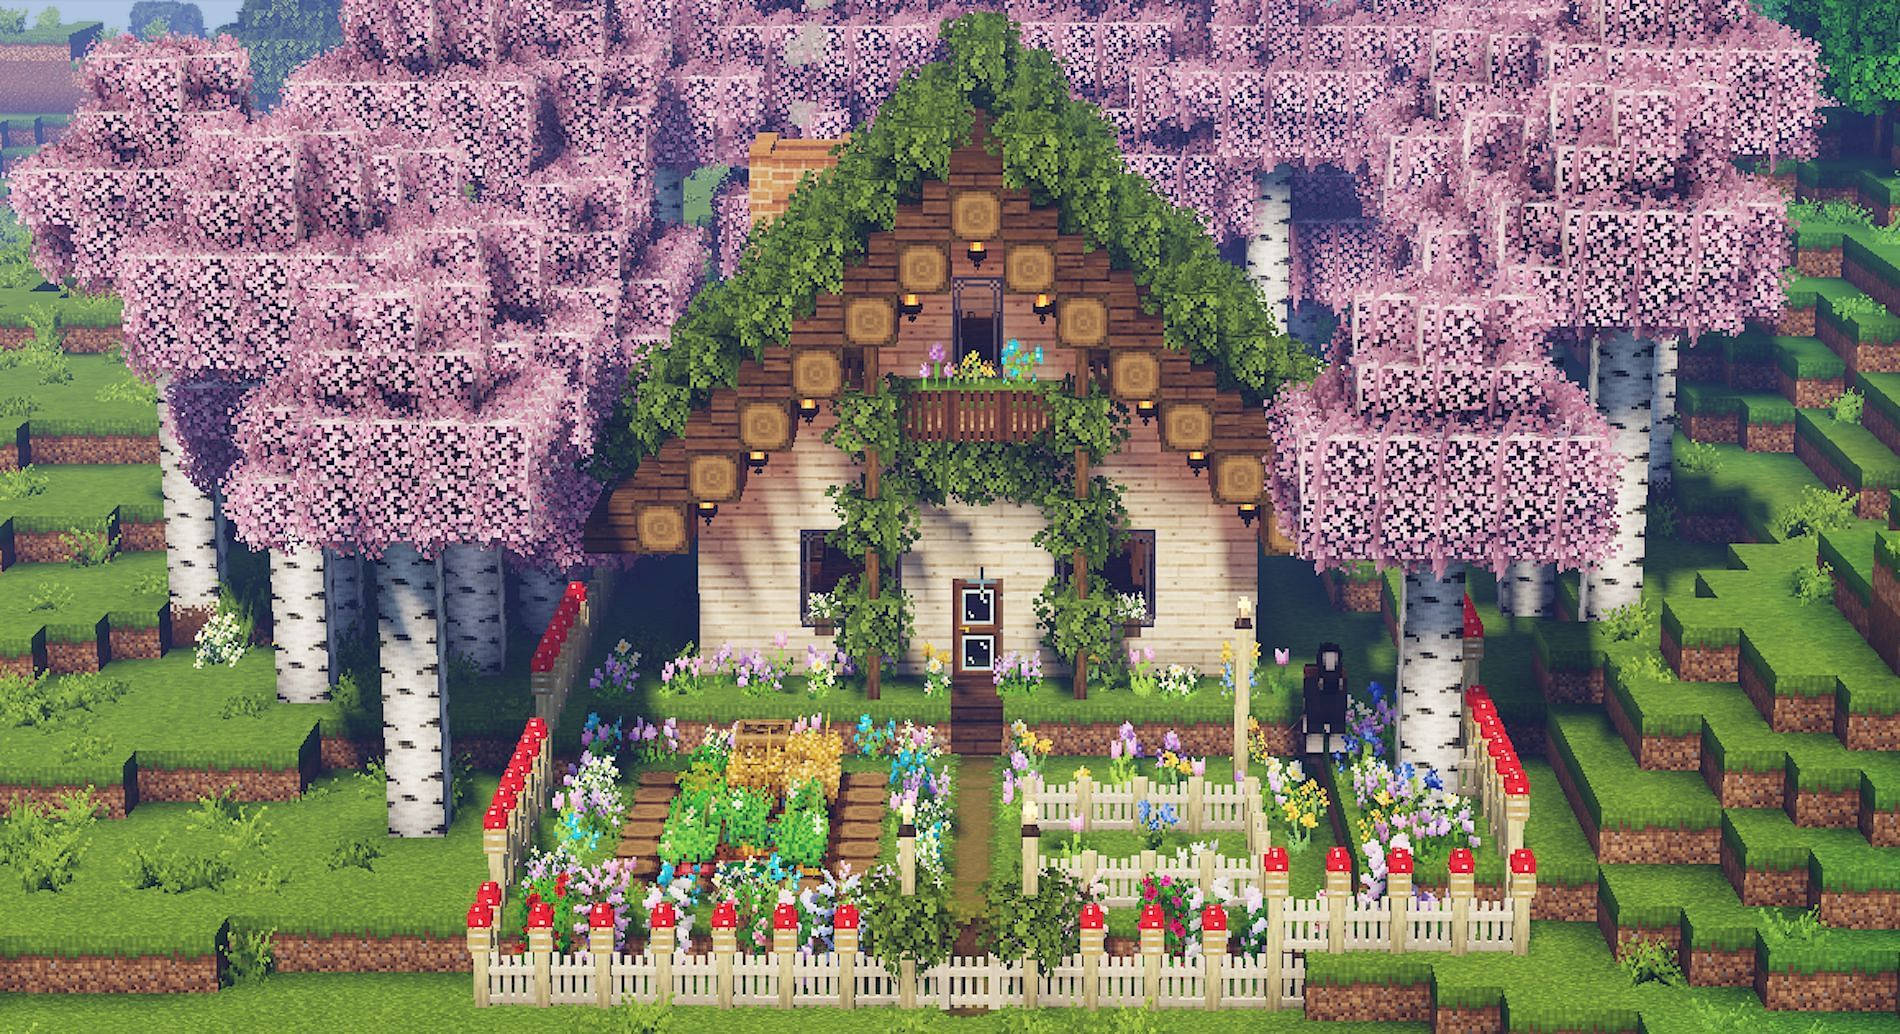 Cottagecore house design [Image via sheepoftheflowers on Tumblr]